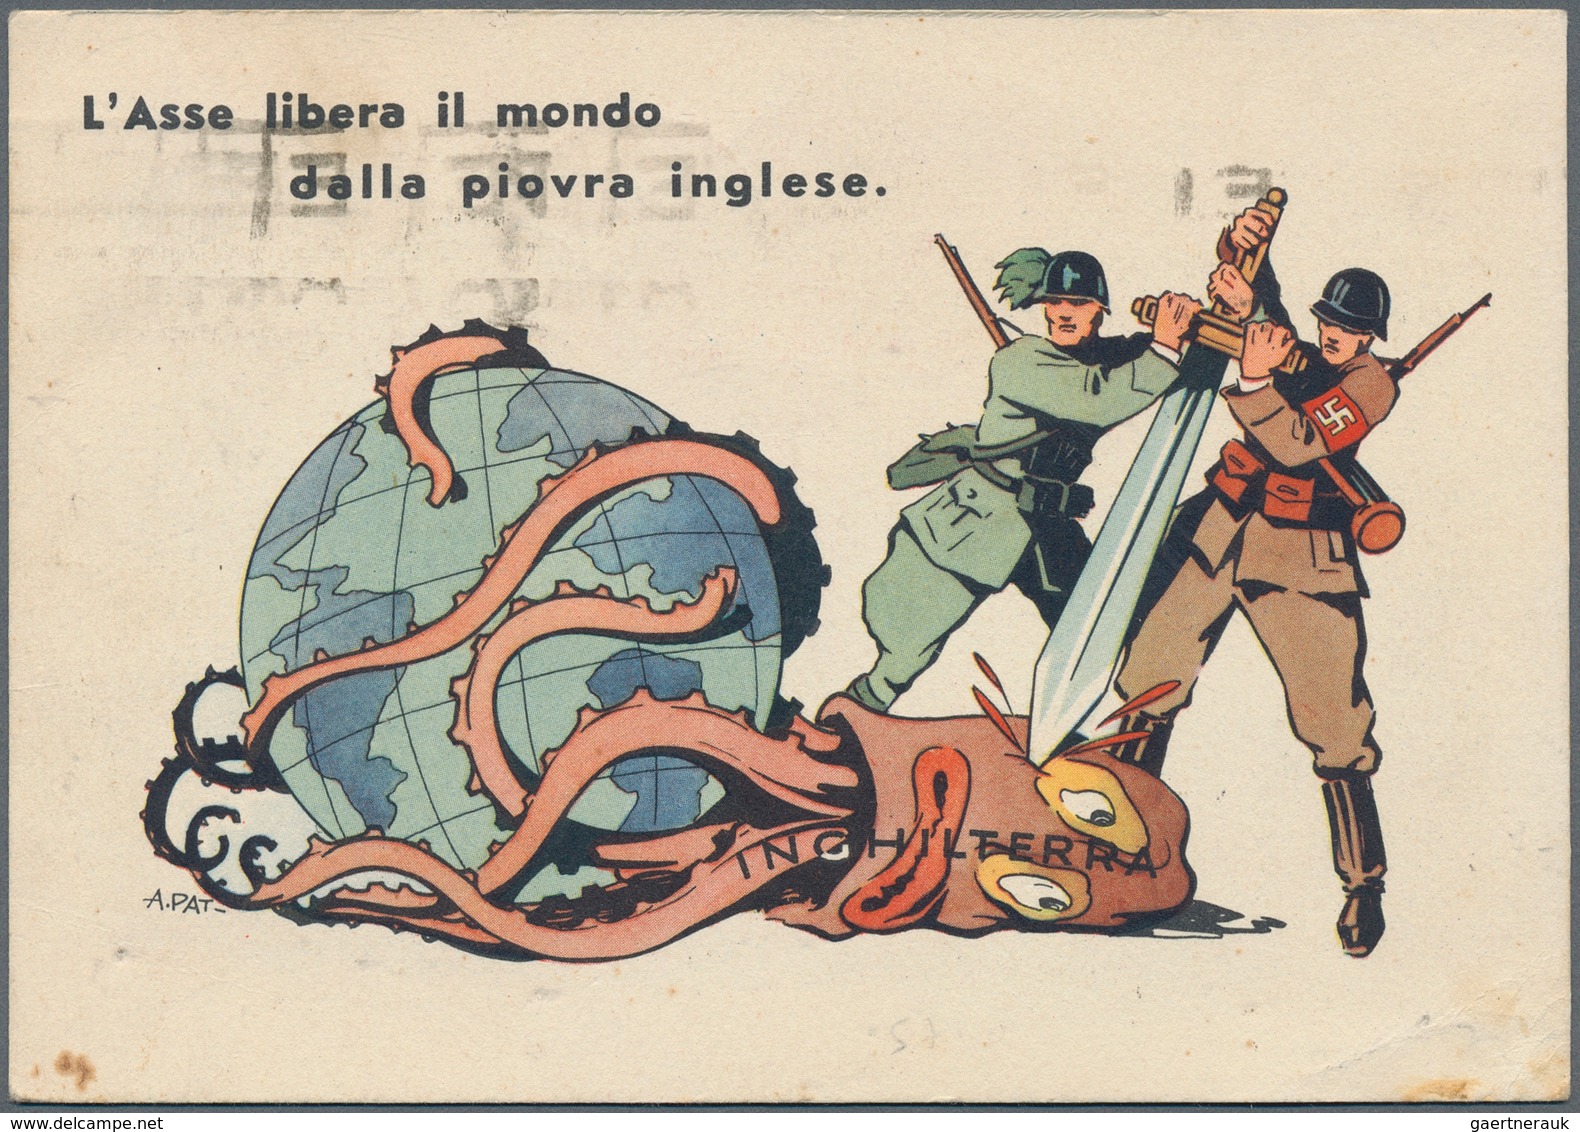 Ansichtskarten: Alle Welt: ITALIEN: 1930/45, interessante Sammlung "Propaganda- und Werbekarten" mit